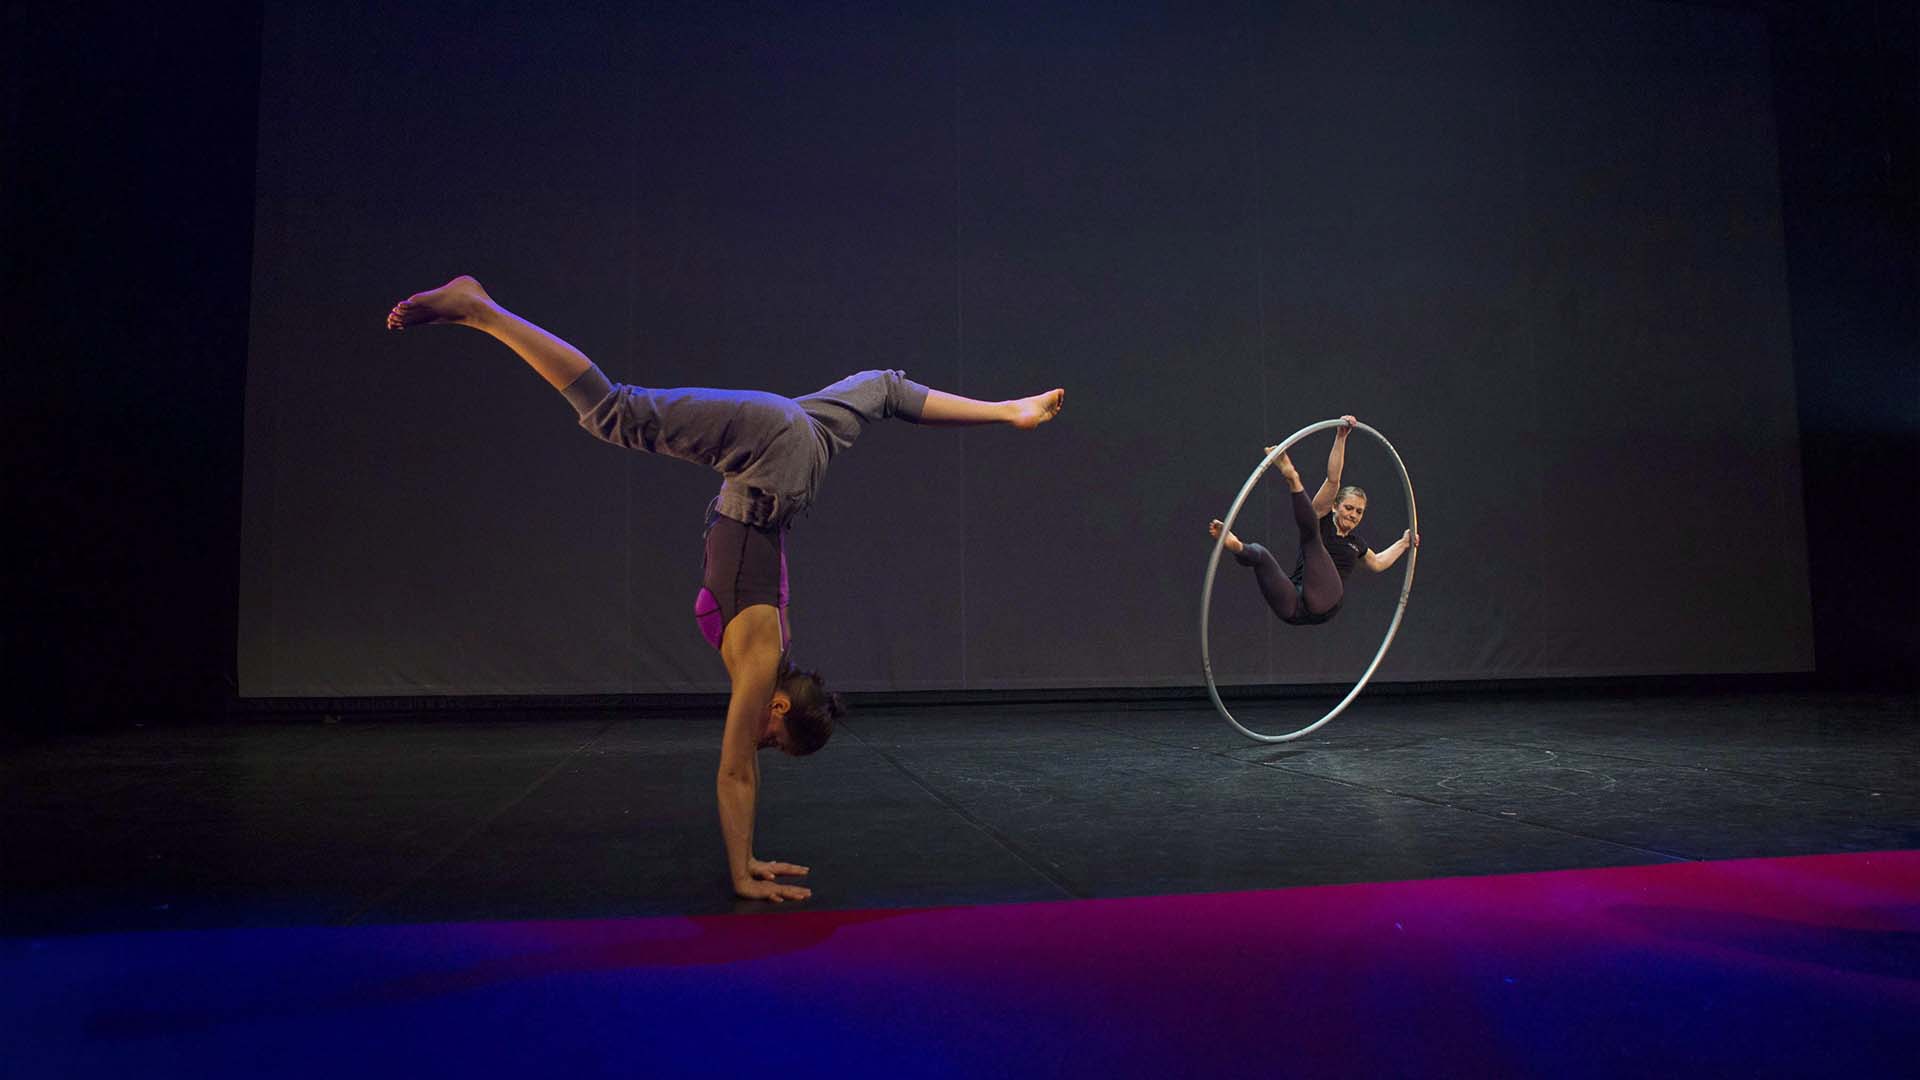 Les artistes s'échauffent avant la soirée d'ouverture du Cirque Eloize à Toronto pour Cirkopolis, le mercredi 1er mars 2017.